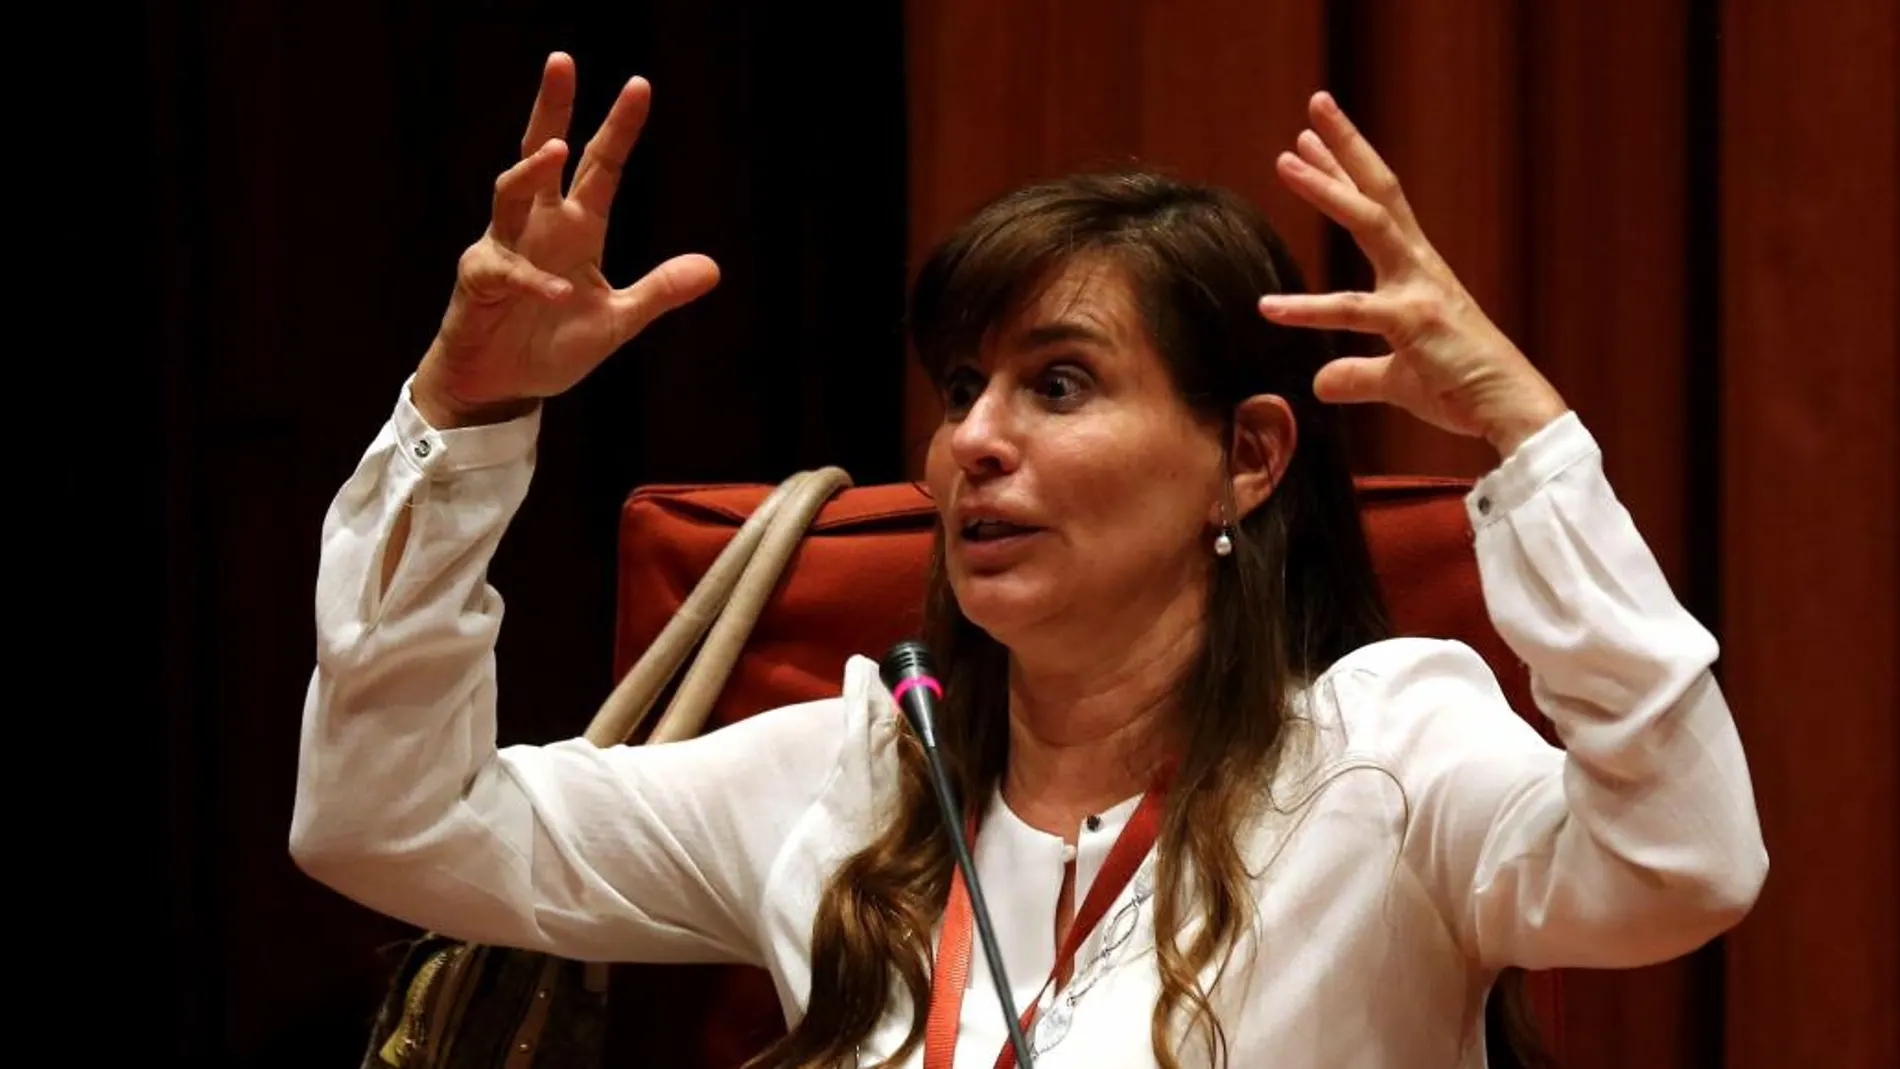 La expareja de Jordi Pujol Ferrusola María Victoria Álvarez, durante su comparecencia ante la comisión